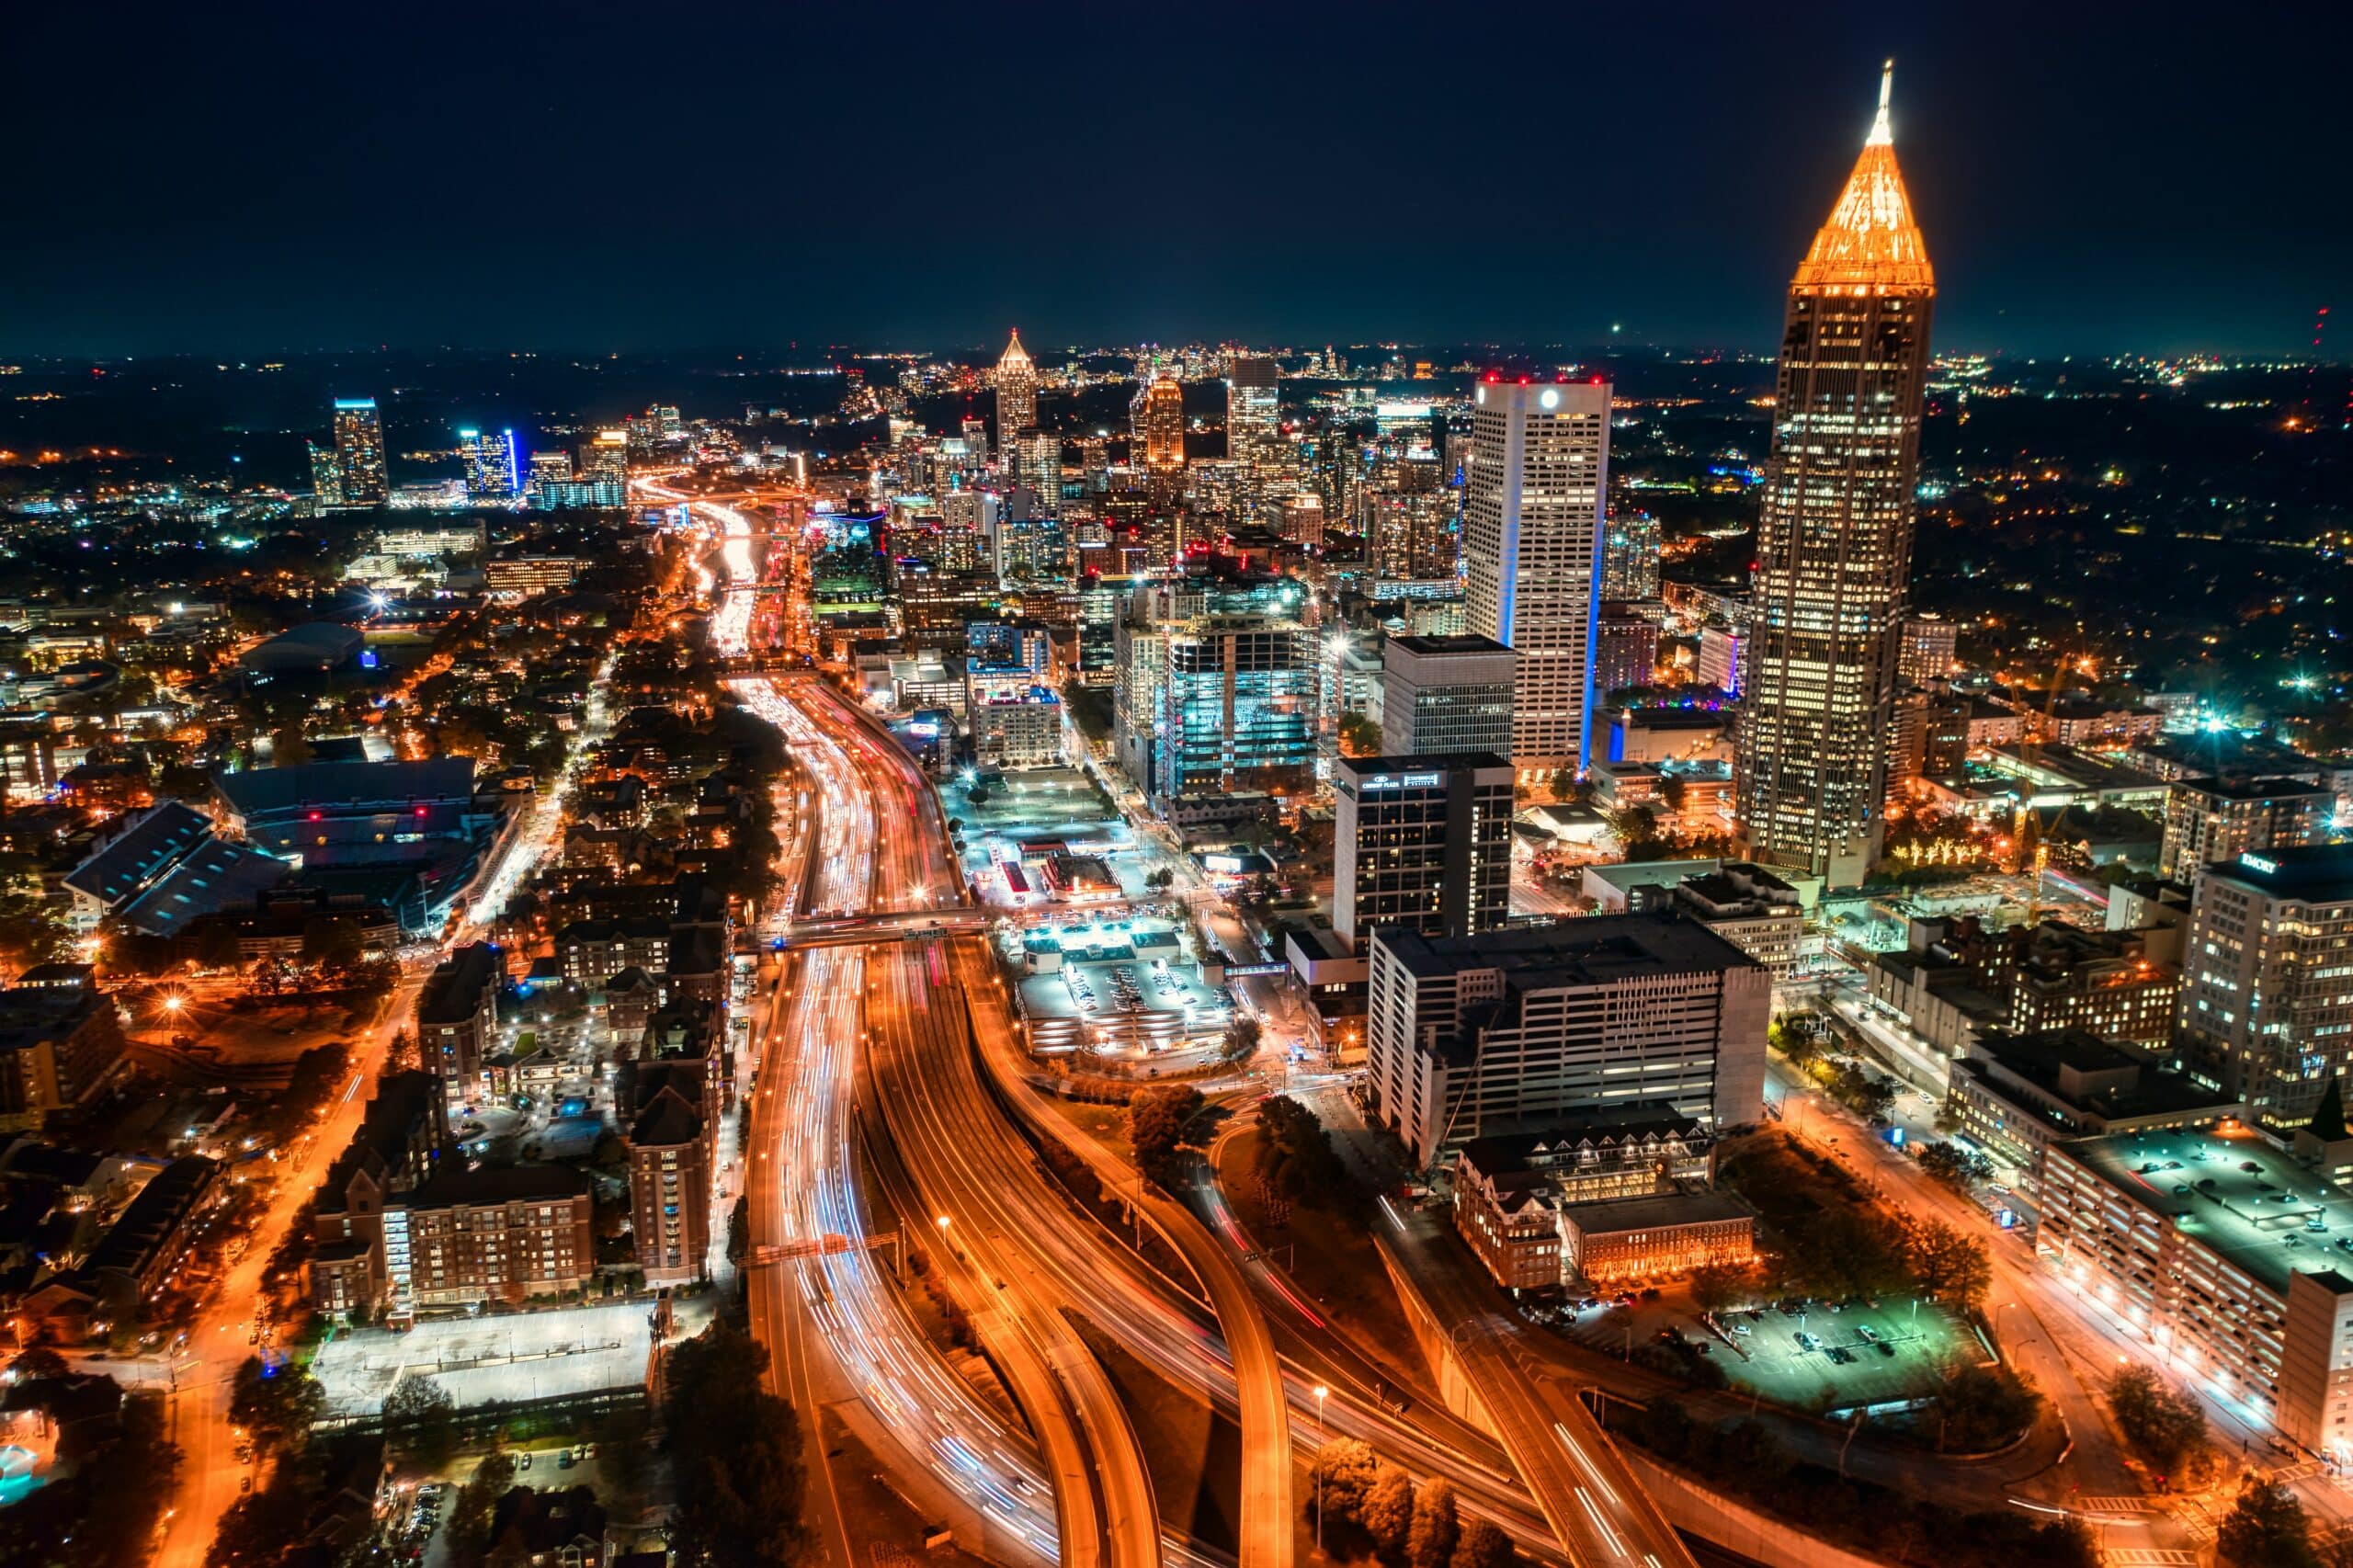 Centro de Atlanta à noite com prédios altos iluminados e ruas com curvas em volta.